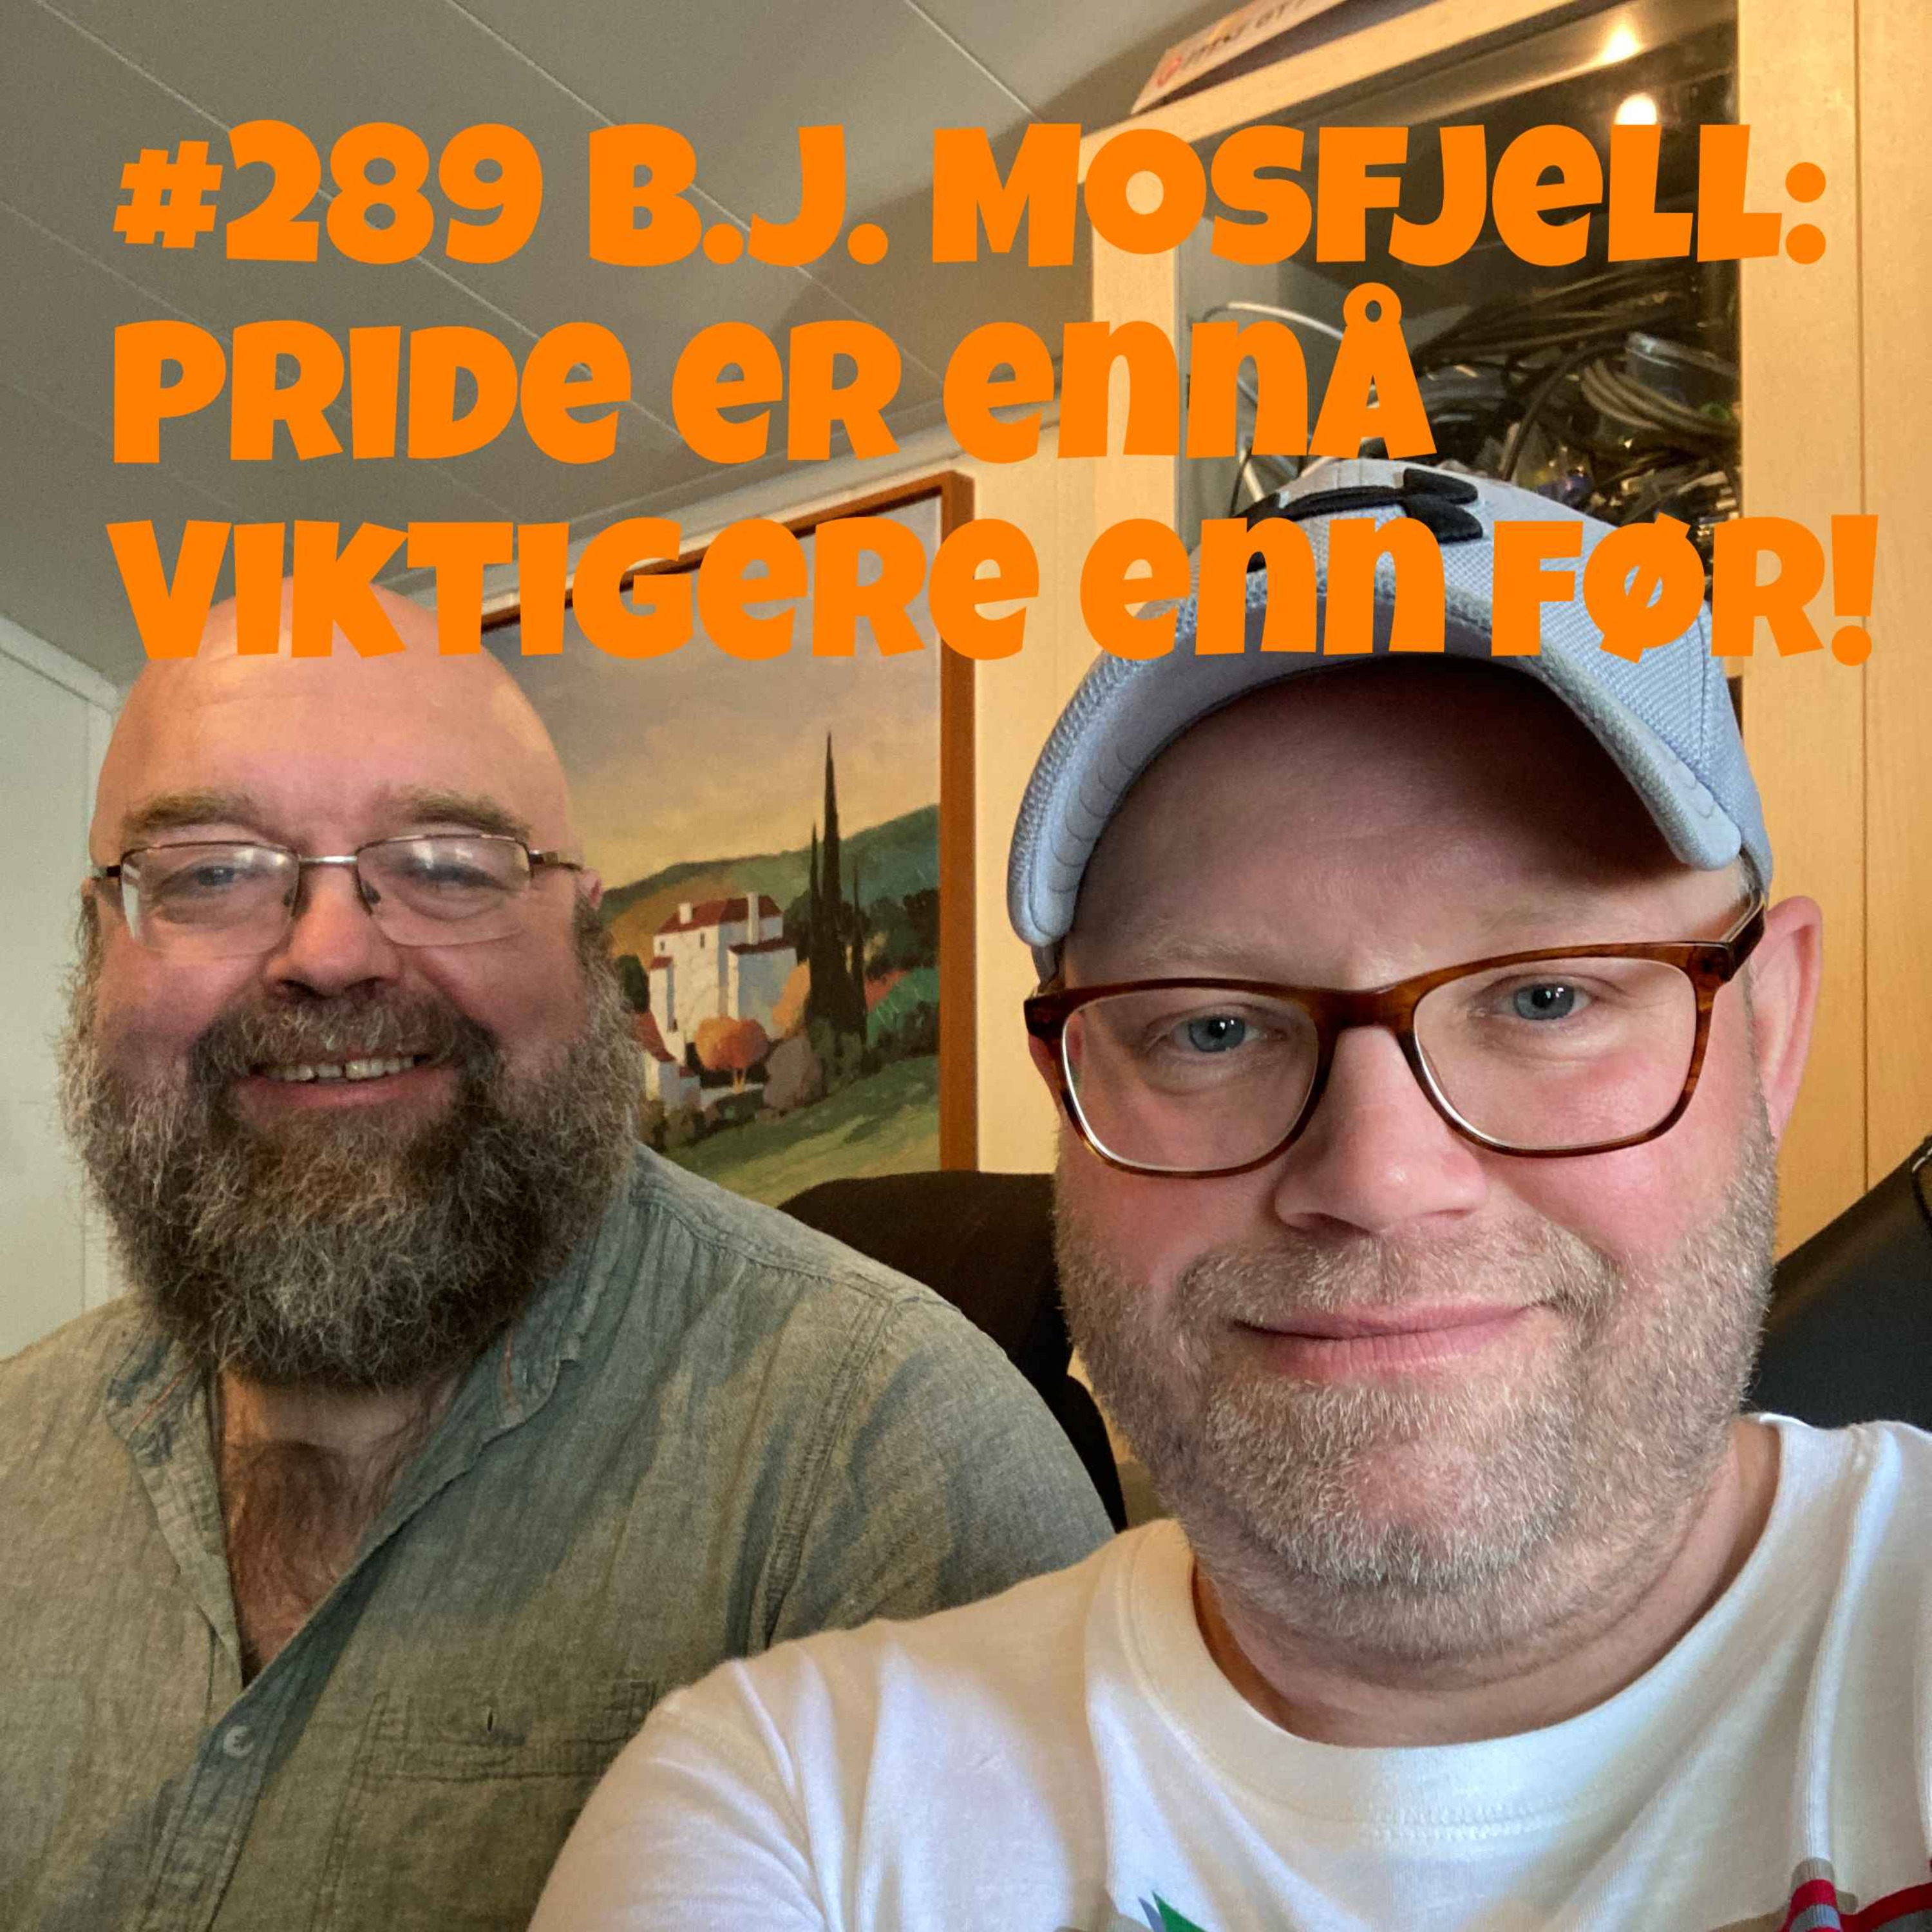 #289 B.J. Mosfjell: Pride er ennå viktigere enn før!